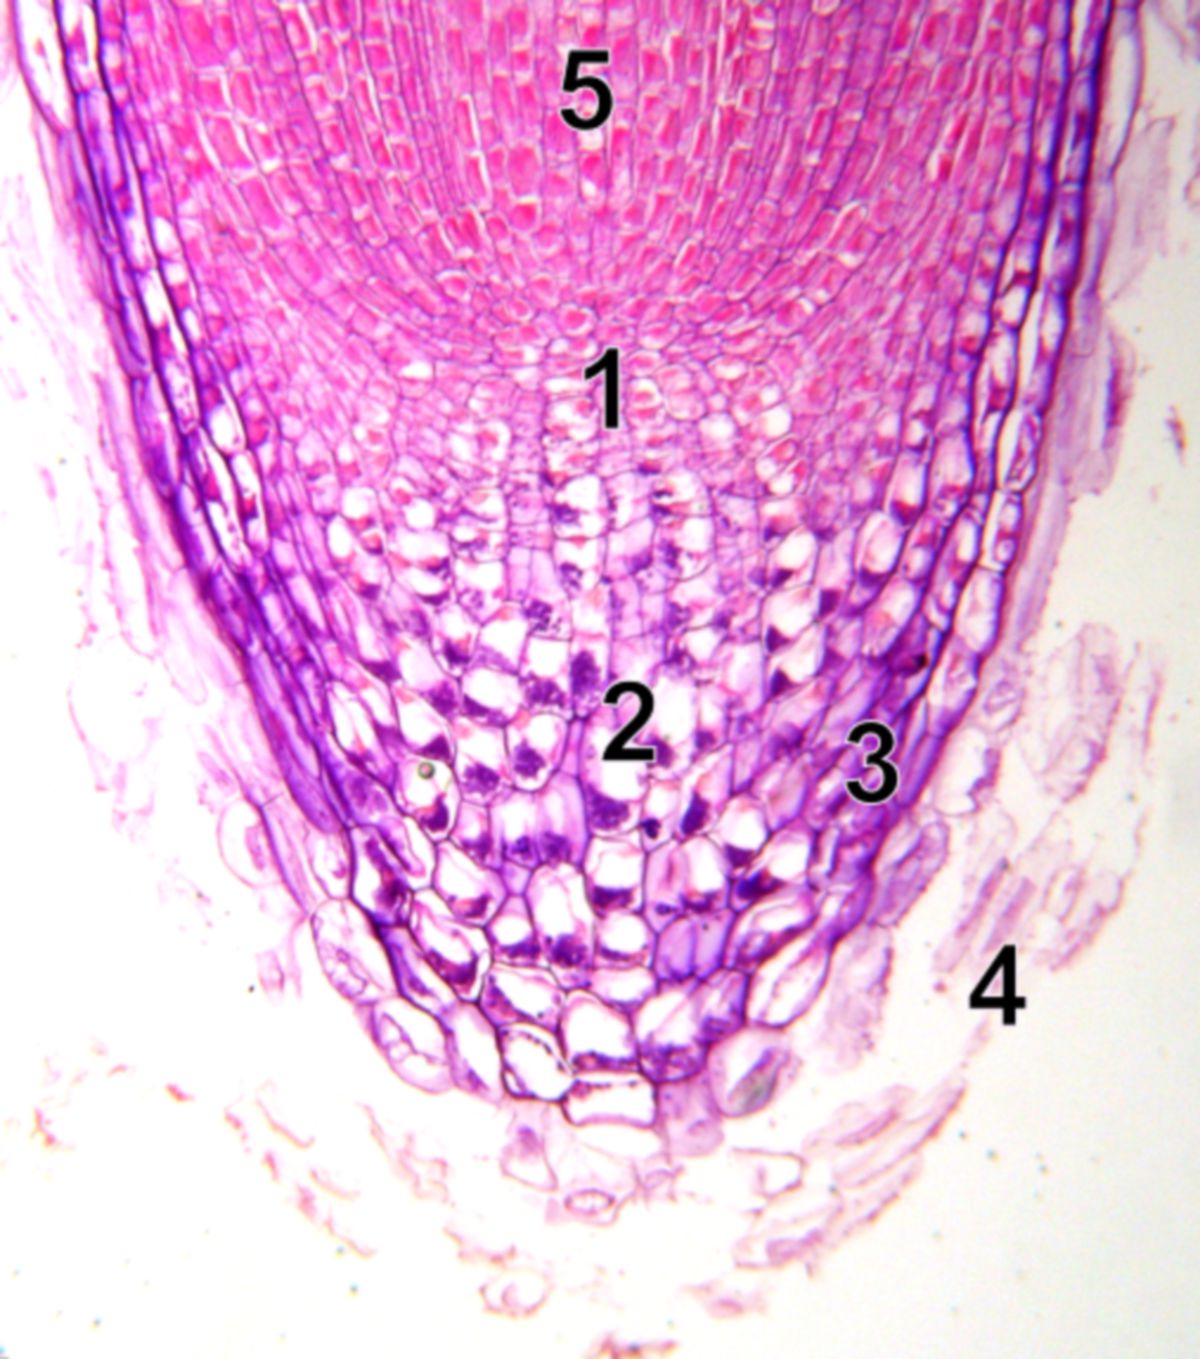 Kormophyt: Wurzelspitze (mikroskopisch)